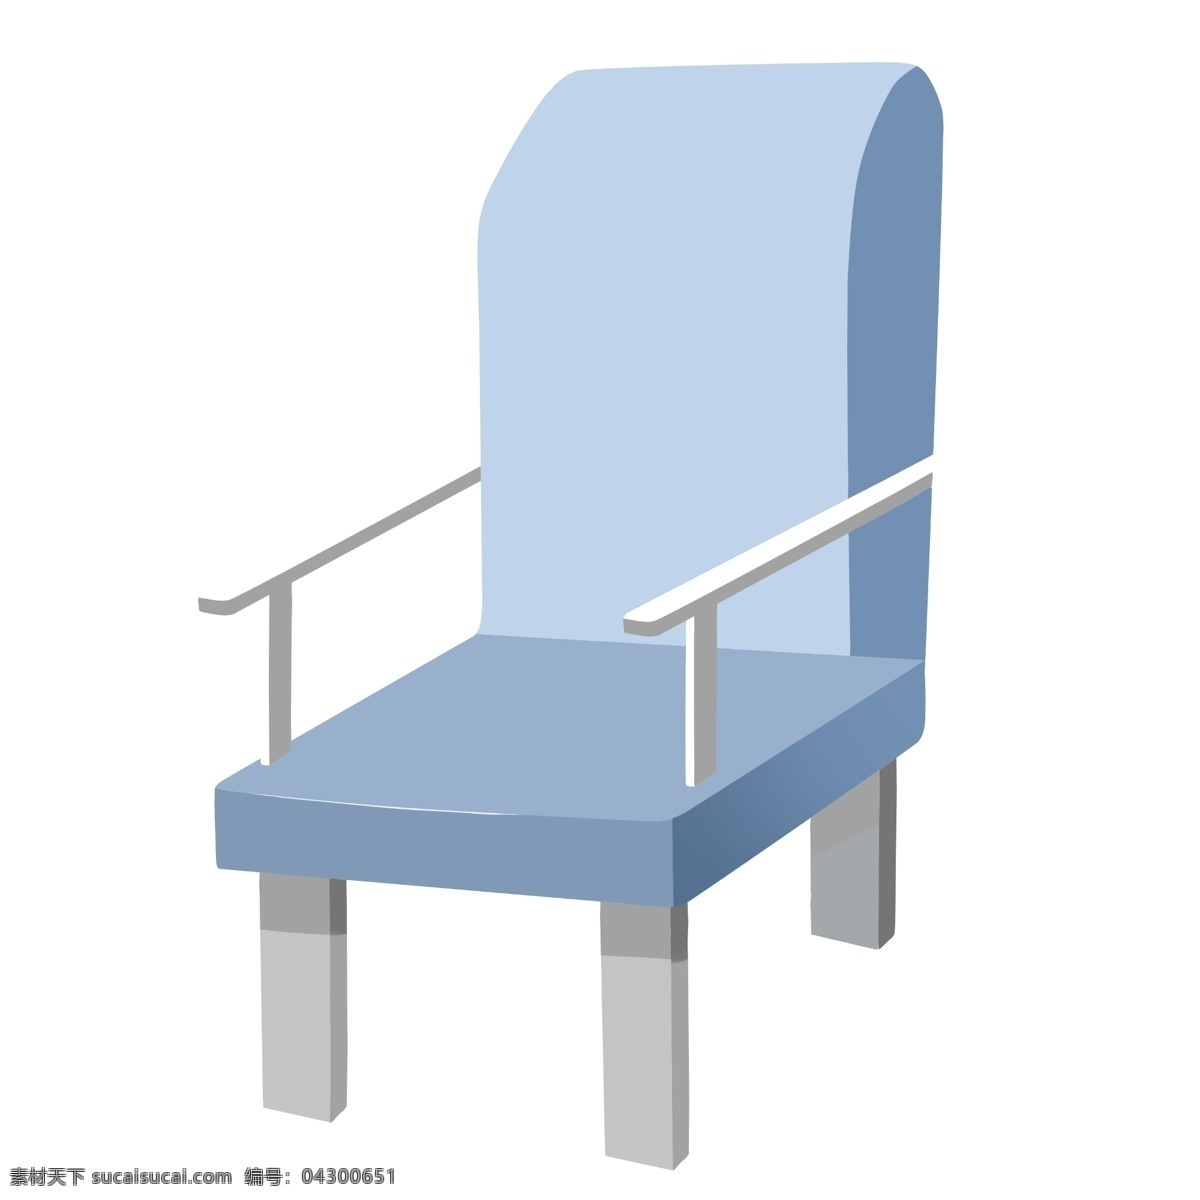 天蓝色 家具 椅子 插画 天蓝色的椅子 卡通插画 椅子插画 家具插画 家具椅子 木质椅子 蓝色的坐垫